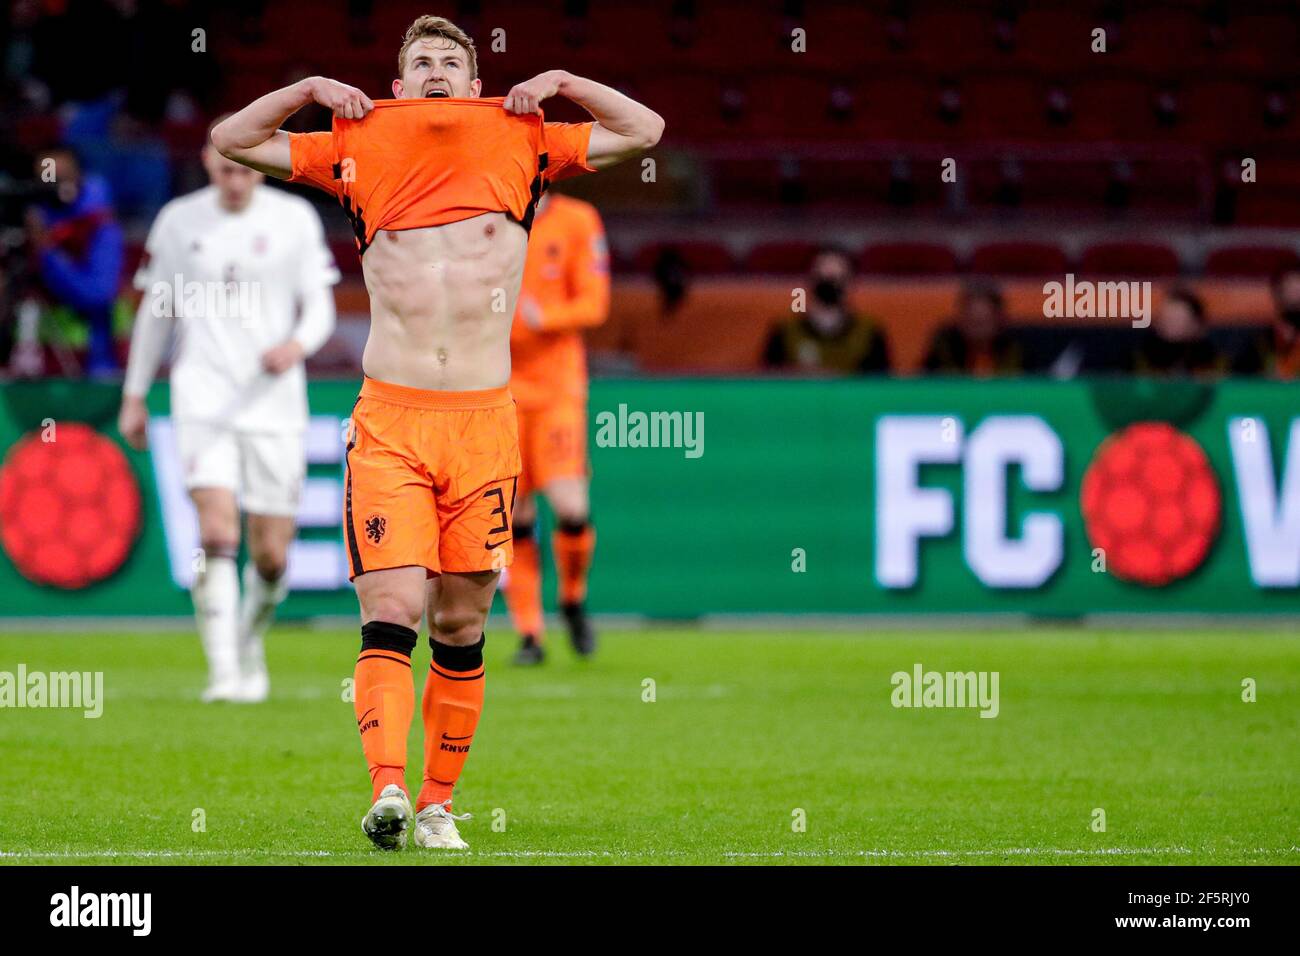 AMSTERDAM, PAESI BASSI - MARZO 27: Matthijs de ligt dei Paesi Bassi arrabbiato, mordendo la sua camicia durante la Coppa del mondo FIFA 2022 Qatar Qualifier match Be Foto Stock